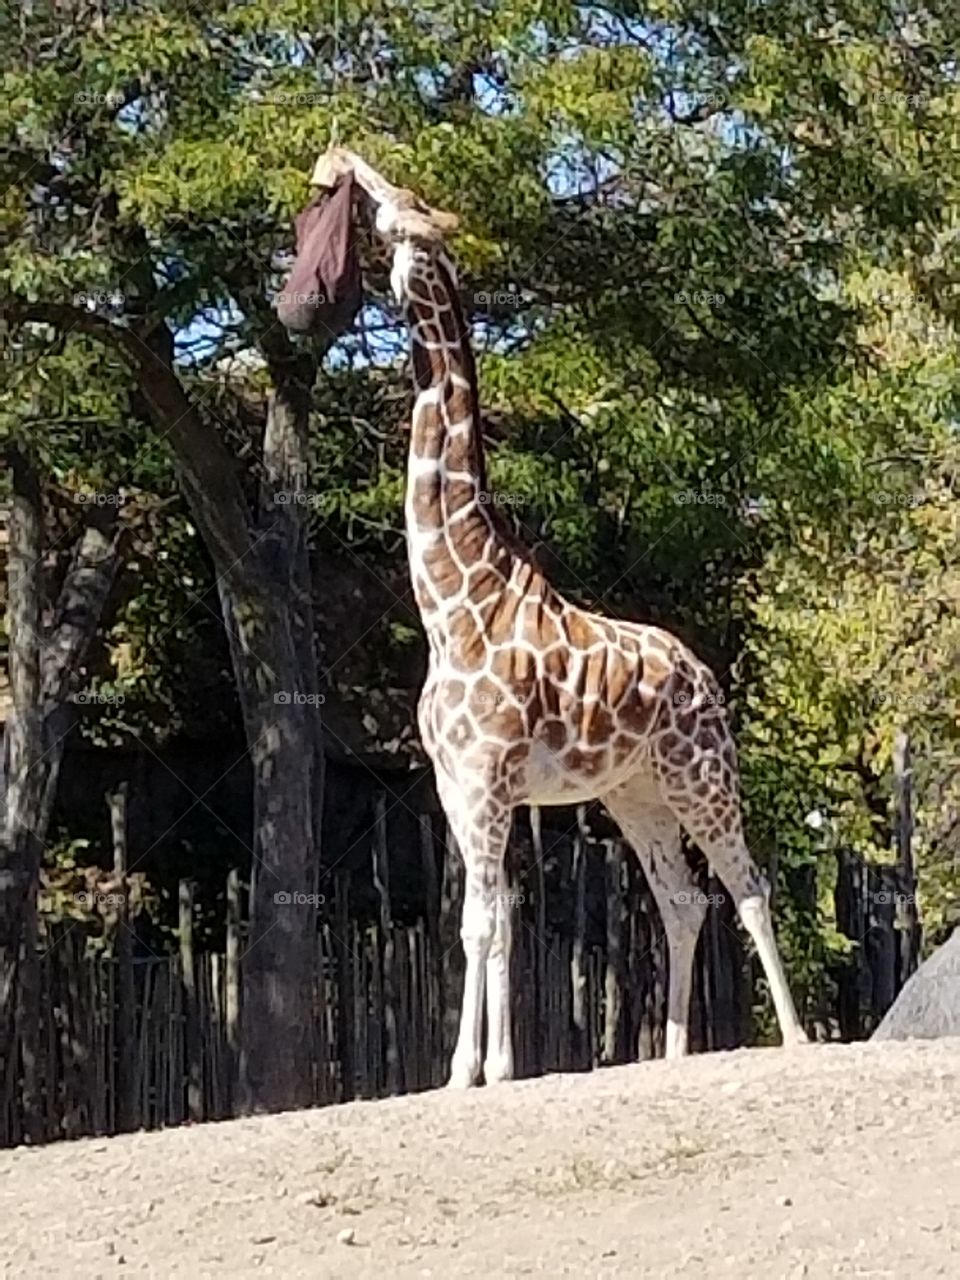 giraffe at Lincoln Park Zoo